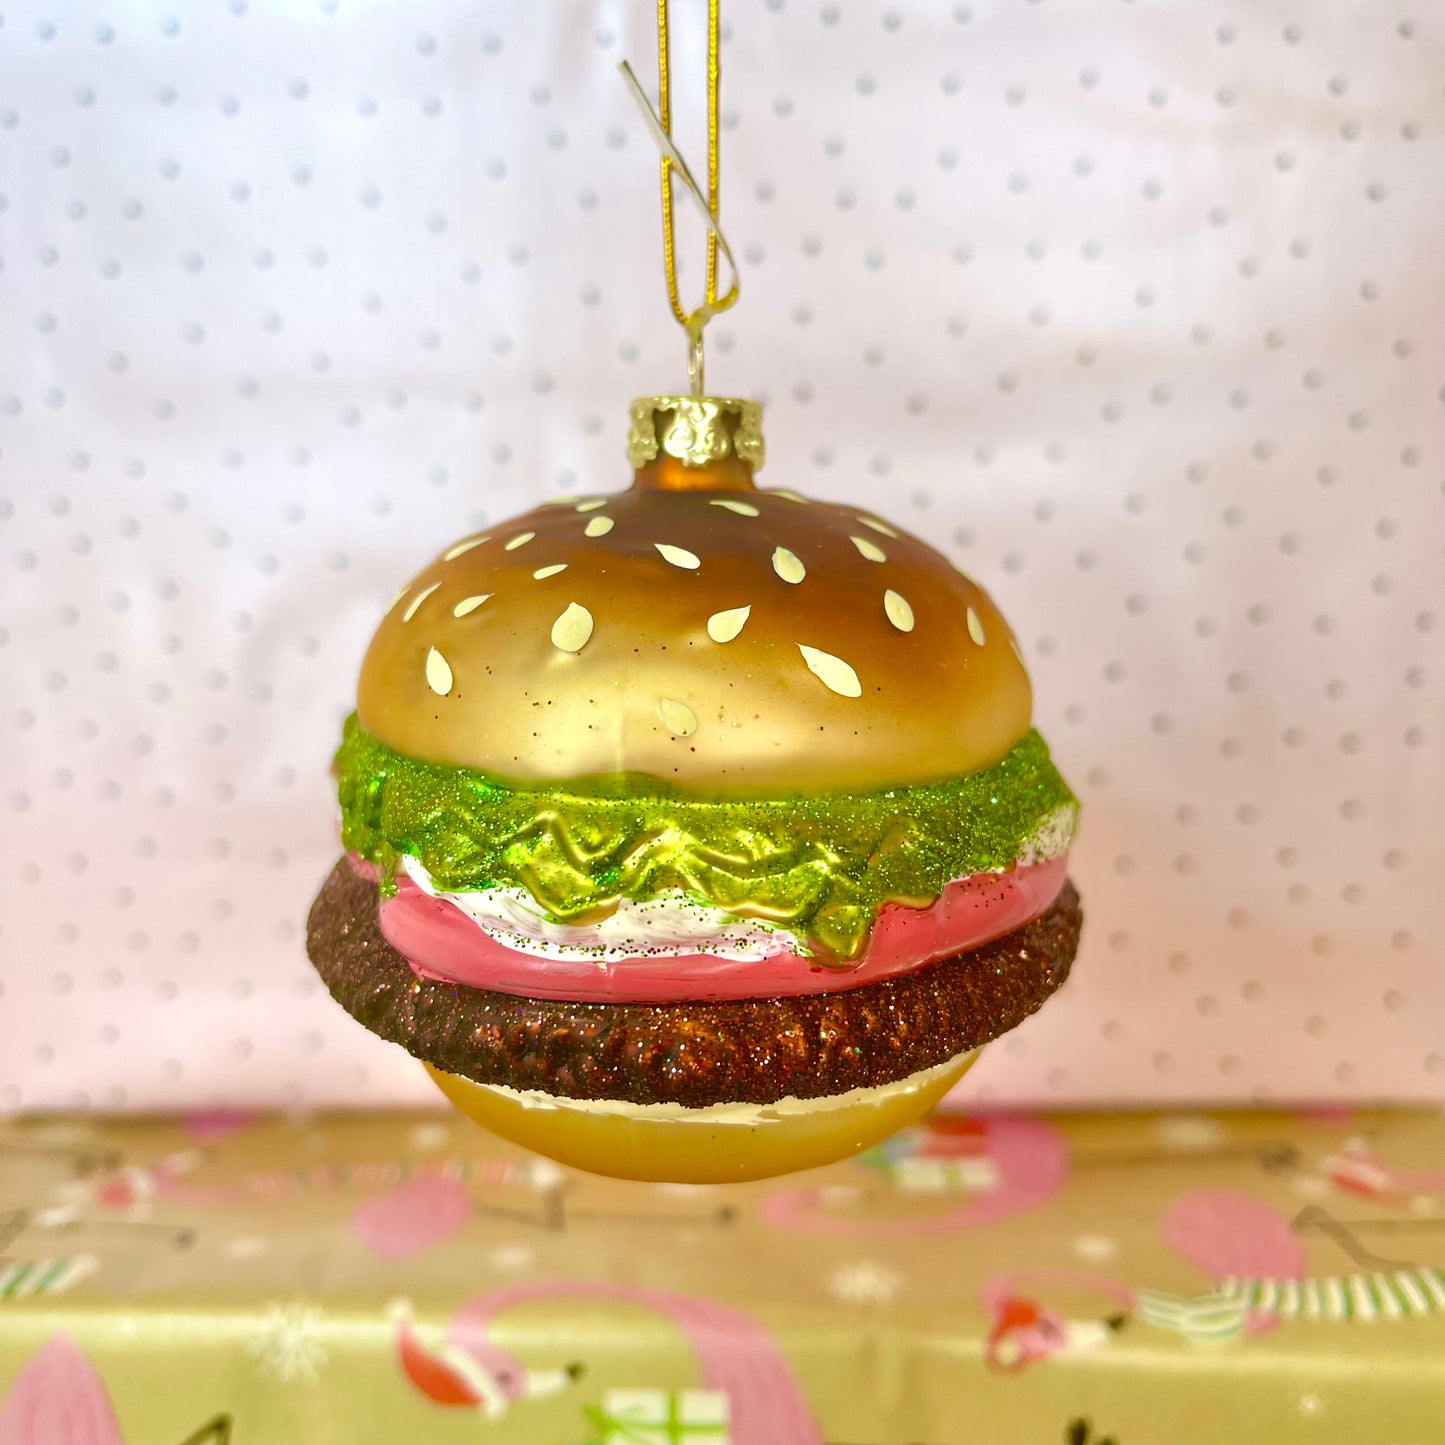 Hamburger Holiday Ornament